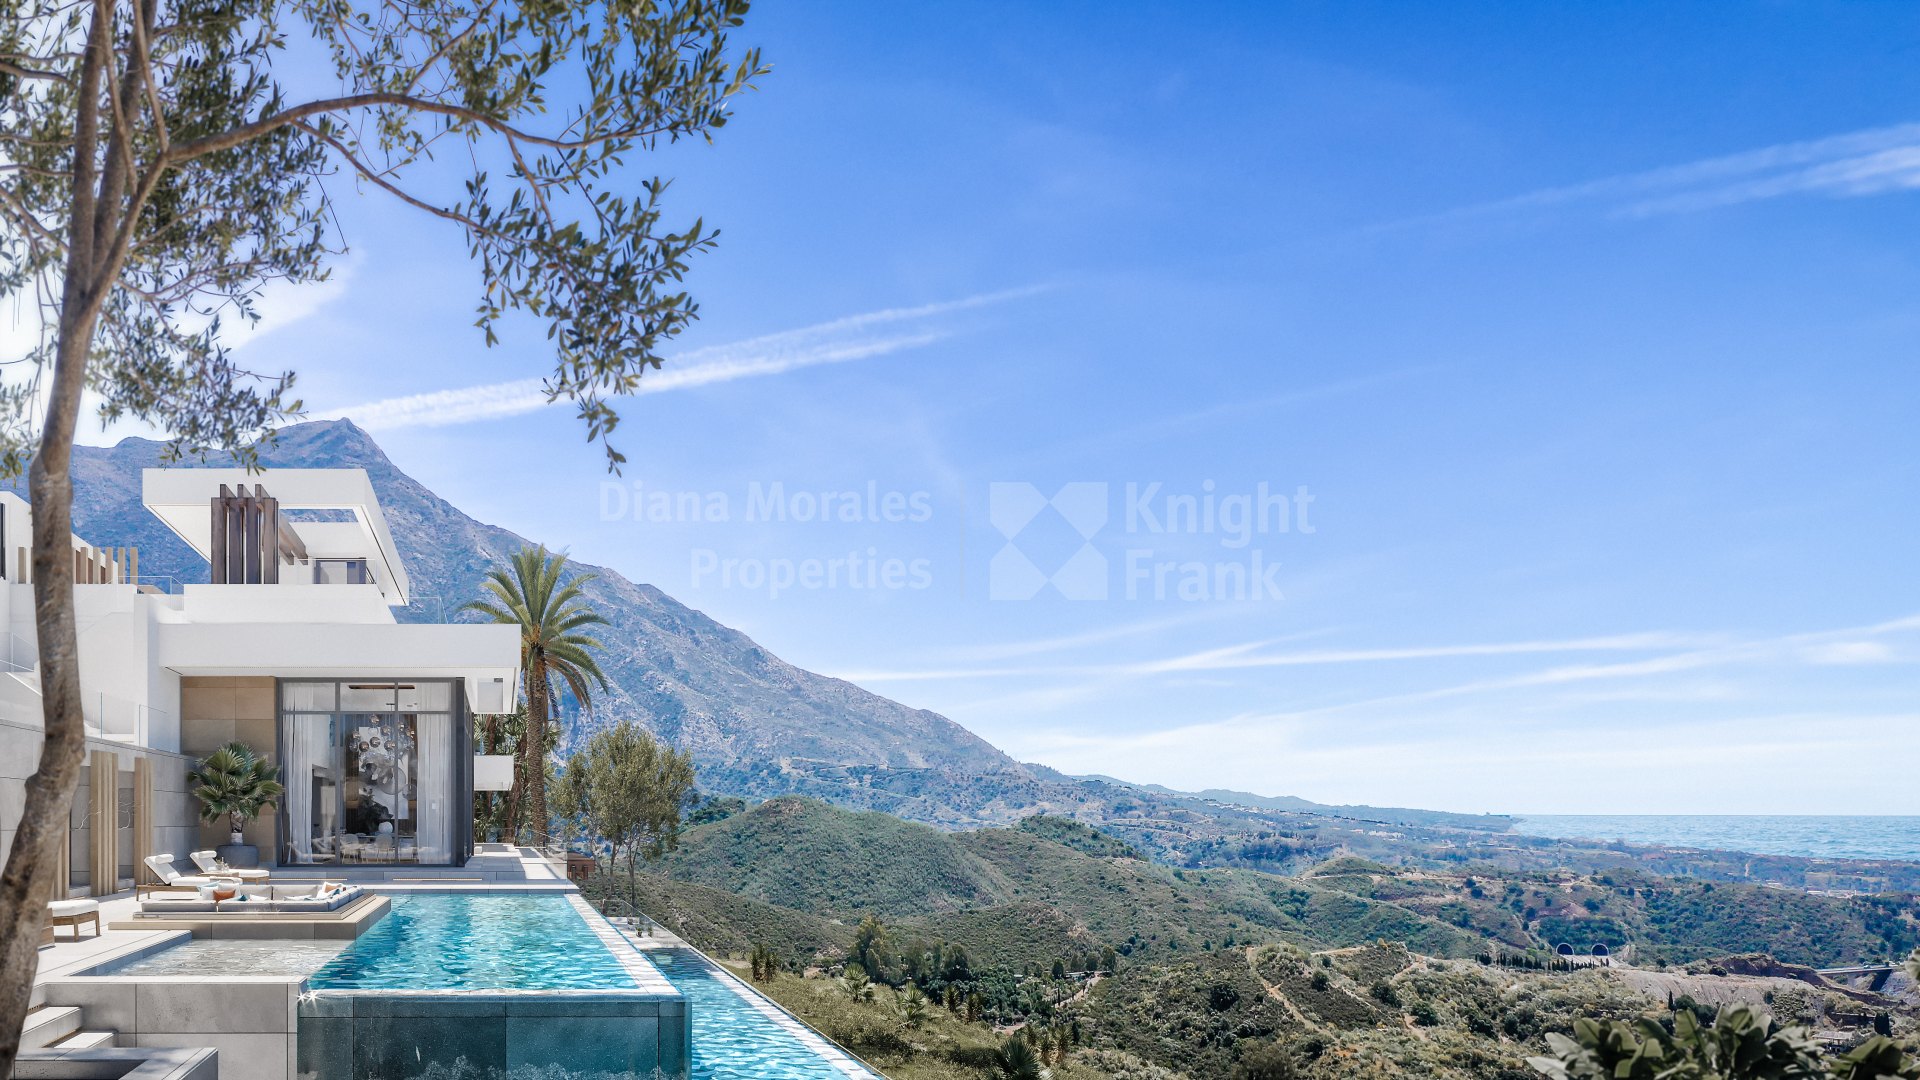 Real de La Quinta, Schlüsselfertiges Projekt einer Villa mit spektakulärem Blick auf das Mittelmeer.